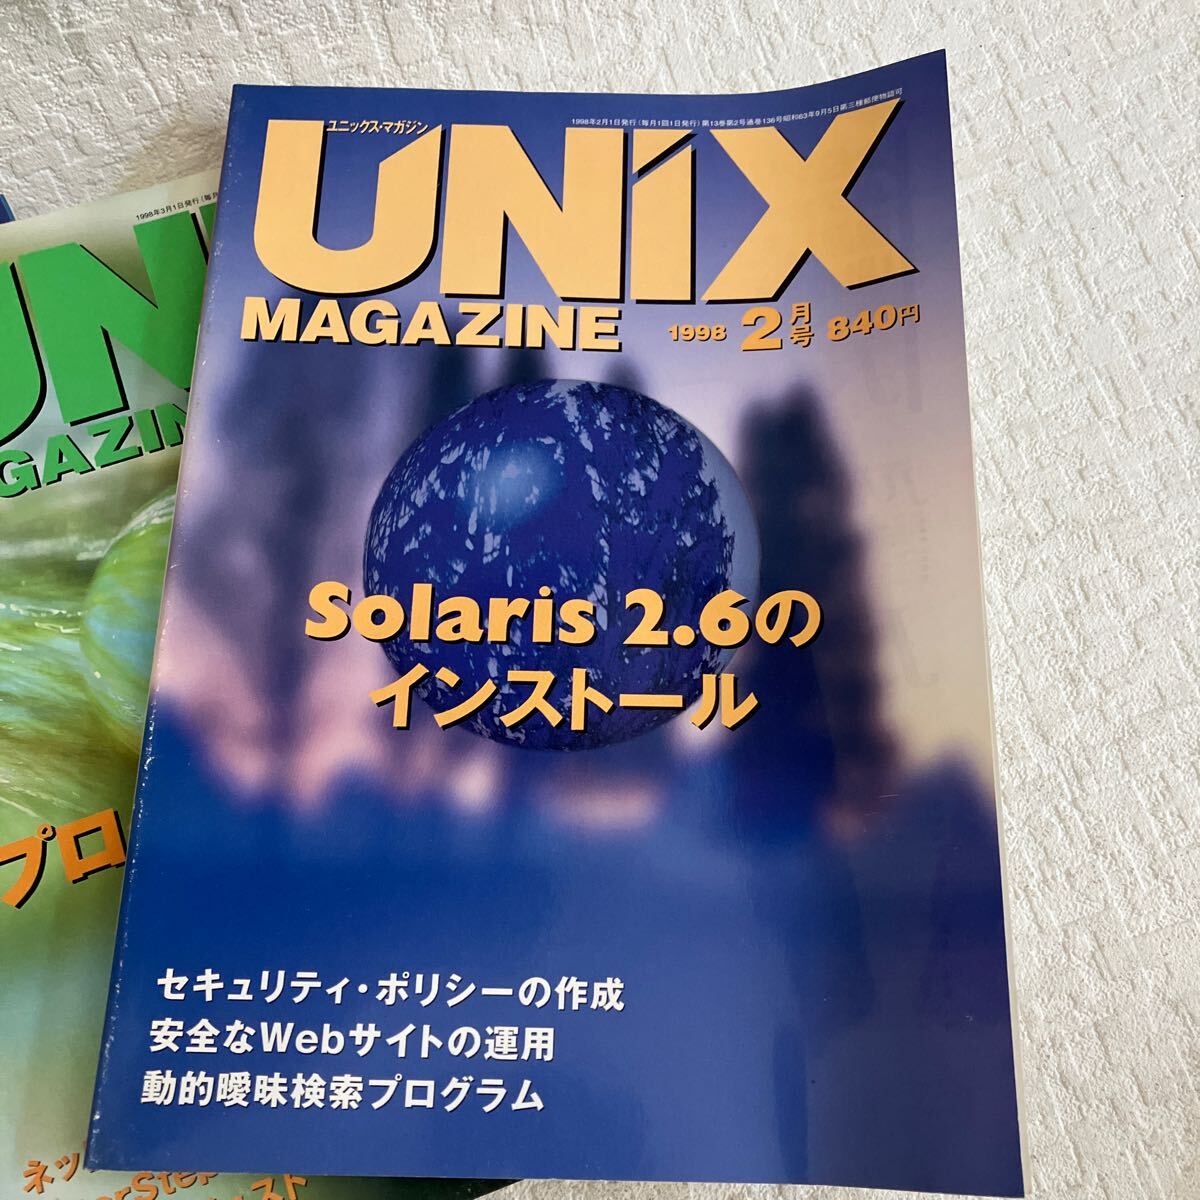 e338/16-80 技術情報誌 雑誌 ユニックスマガジン UNiX MAGAZINE 1998 まとめて 7冊 アスキー プログラミング java 当時物_画像6